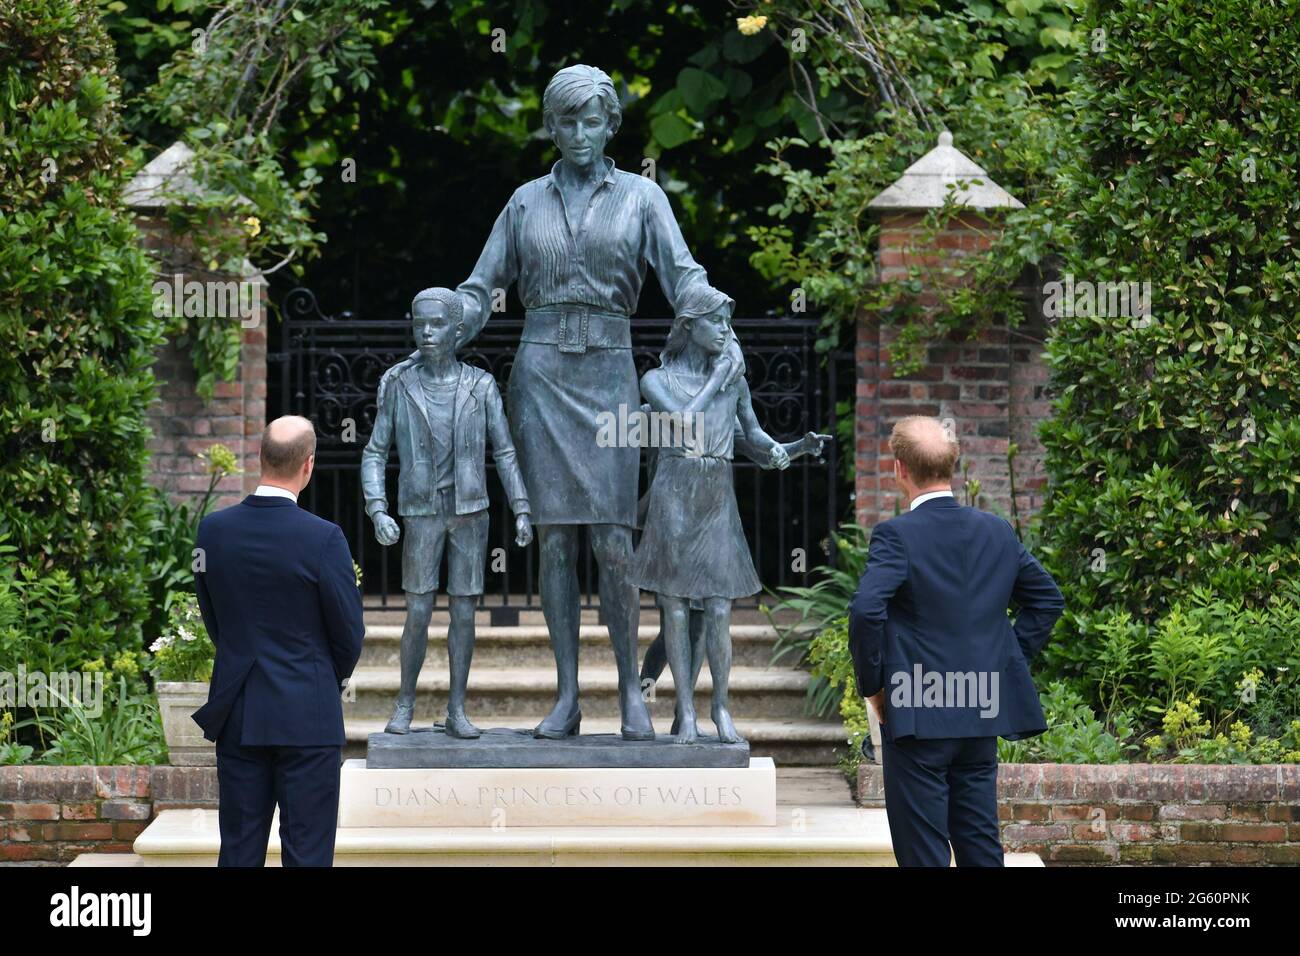 Le duc de Cambridge (à gauche) et le duc de Sussex regardent une statue qu'ils ont commandée de leur mère Diana, la princesse de Galles, dans le jardin en contrebas de Kensington Palace, Londres, à l'occasion de ce qui aurait été son 60ème anniversaire. Date de la photo : jeudi 1er juillet 2021. Banque D'Images